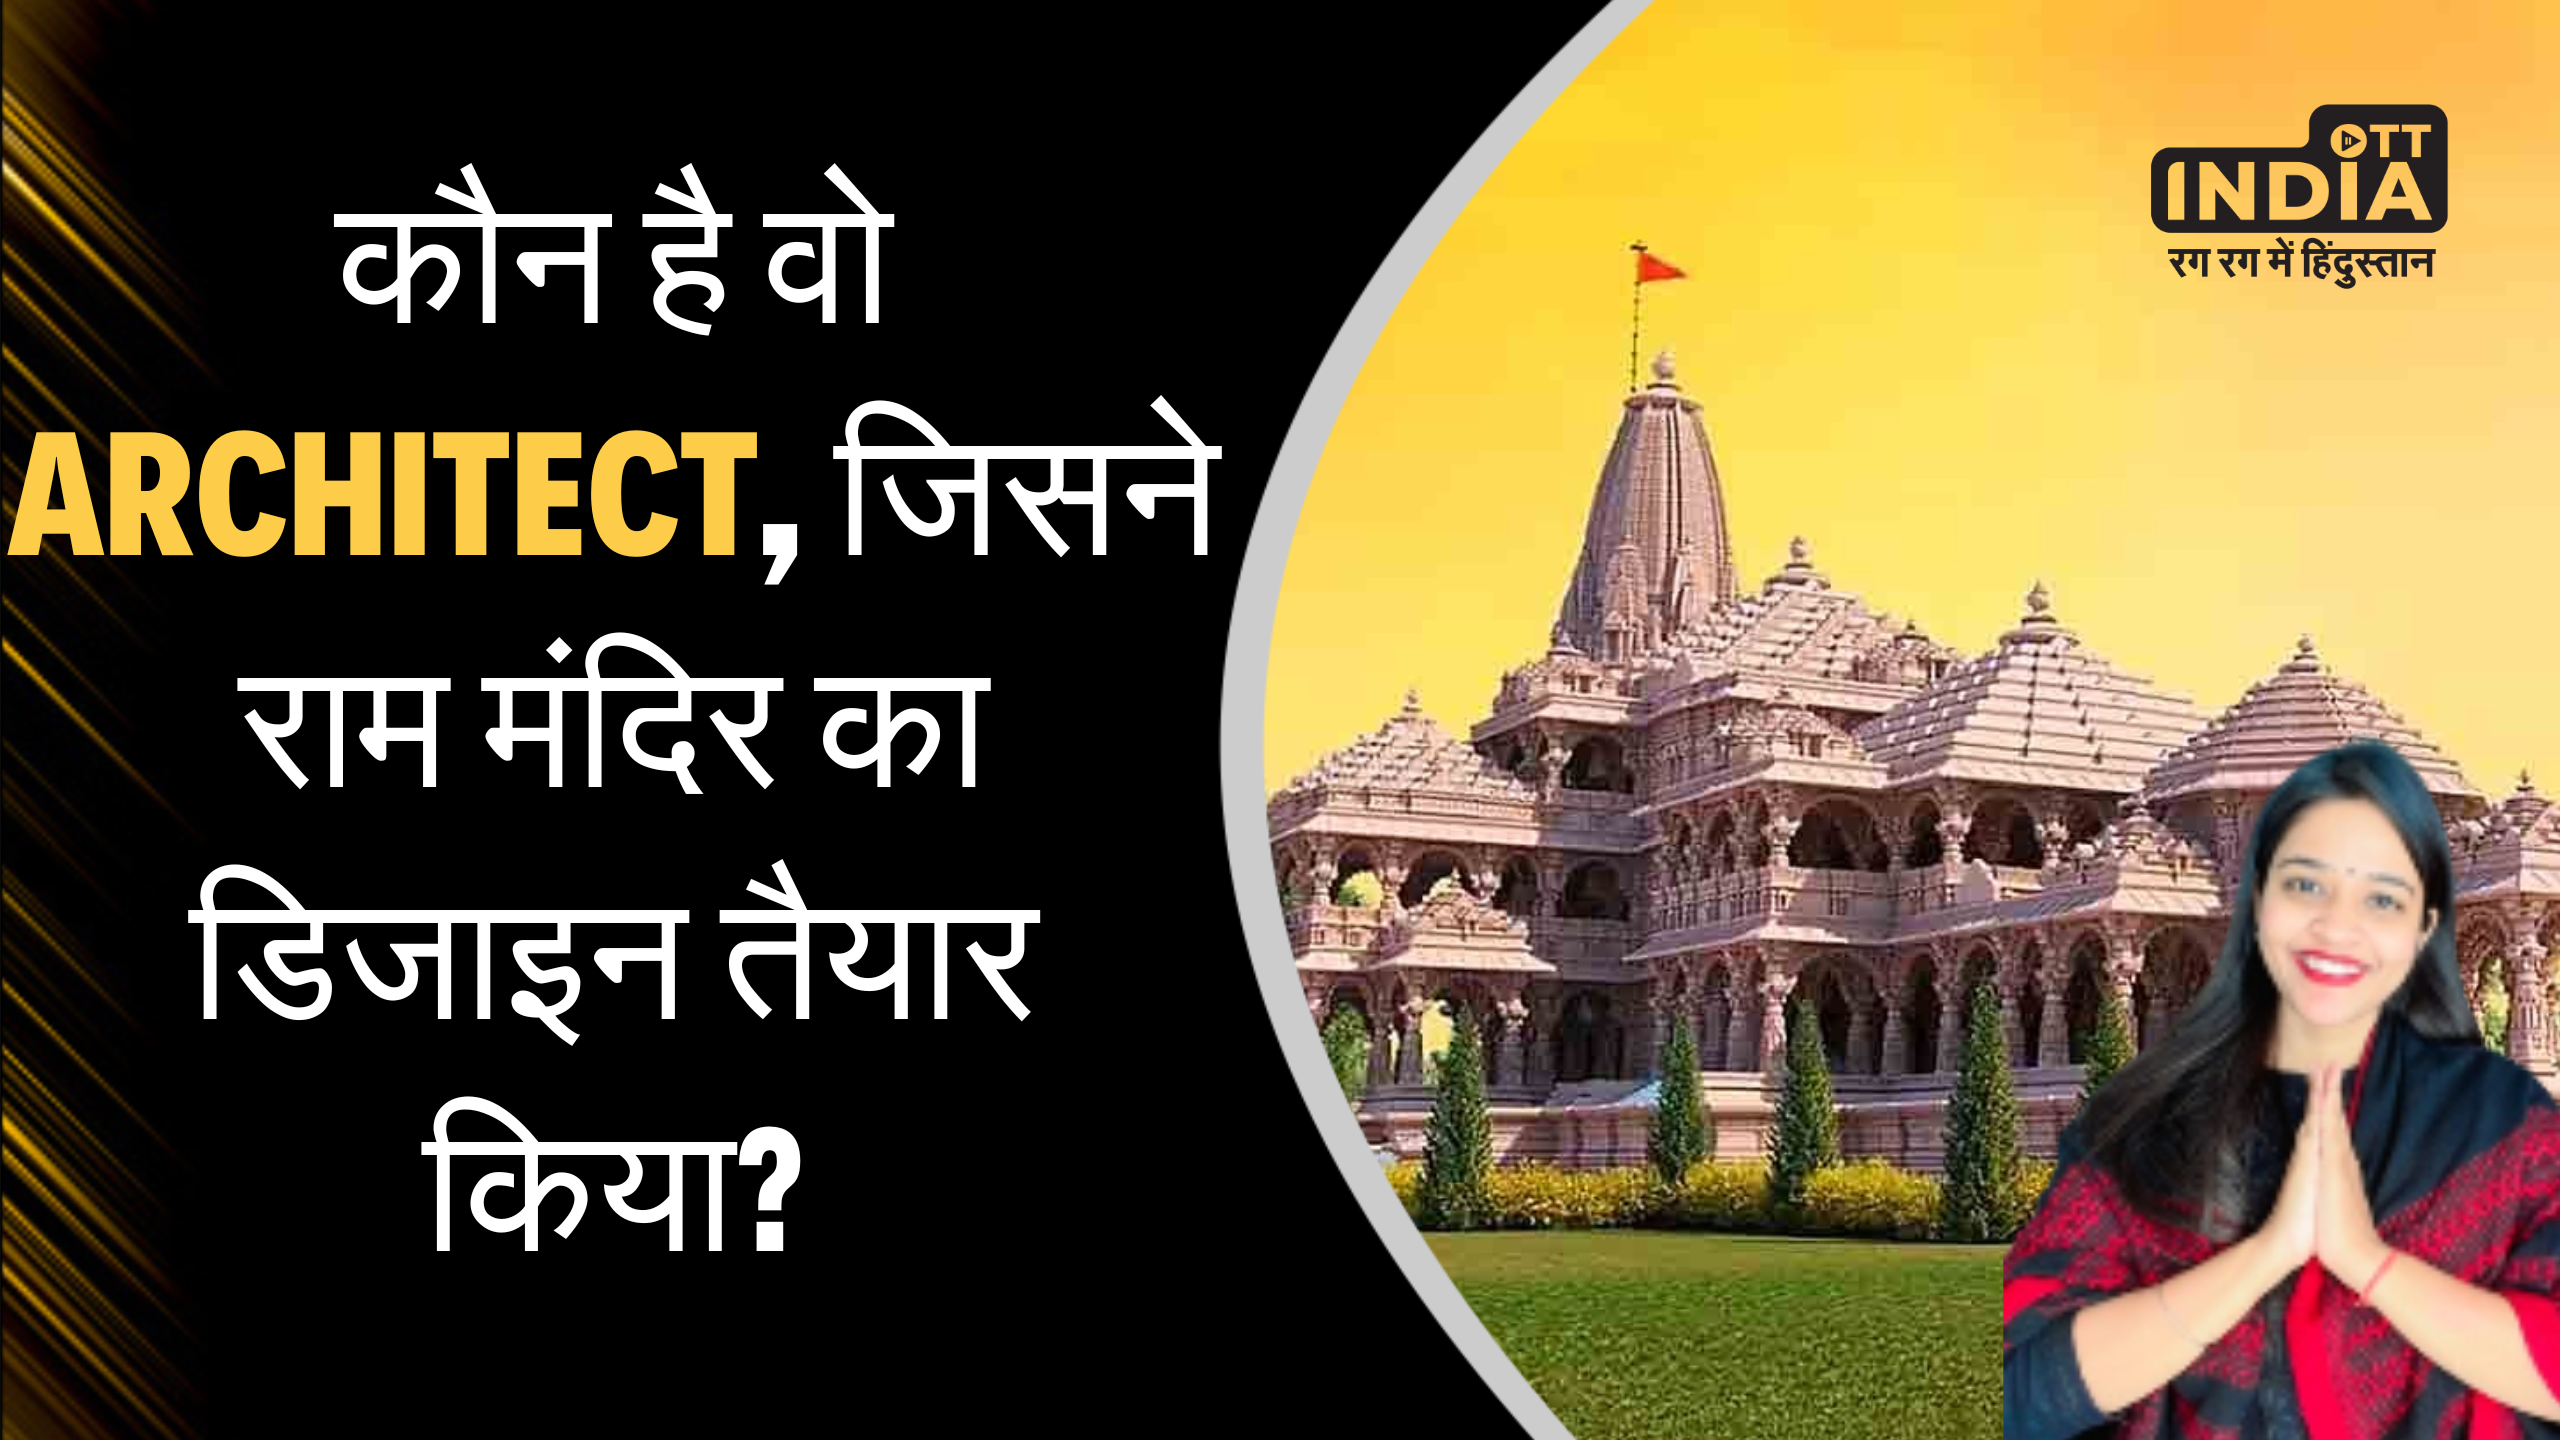 कौन है वो Architect, जिसने राम मंदिर का डिजाइन तैयार किया?